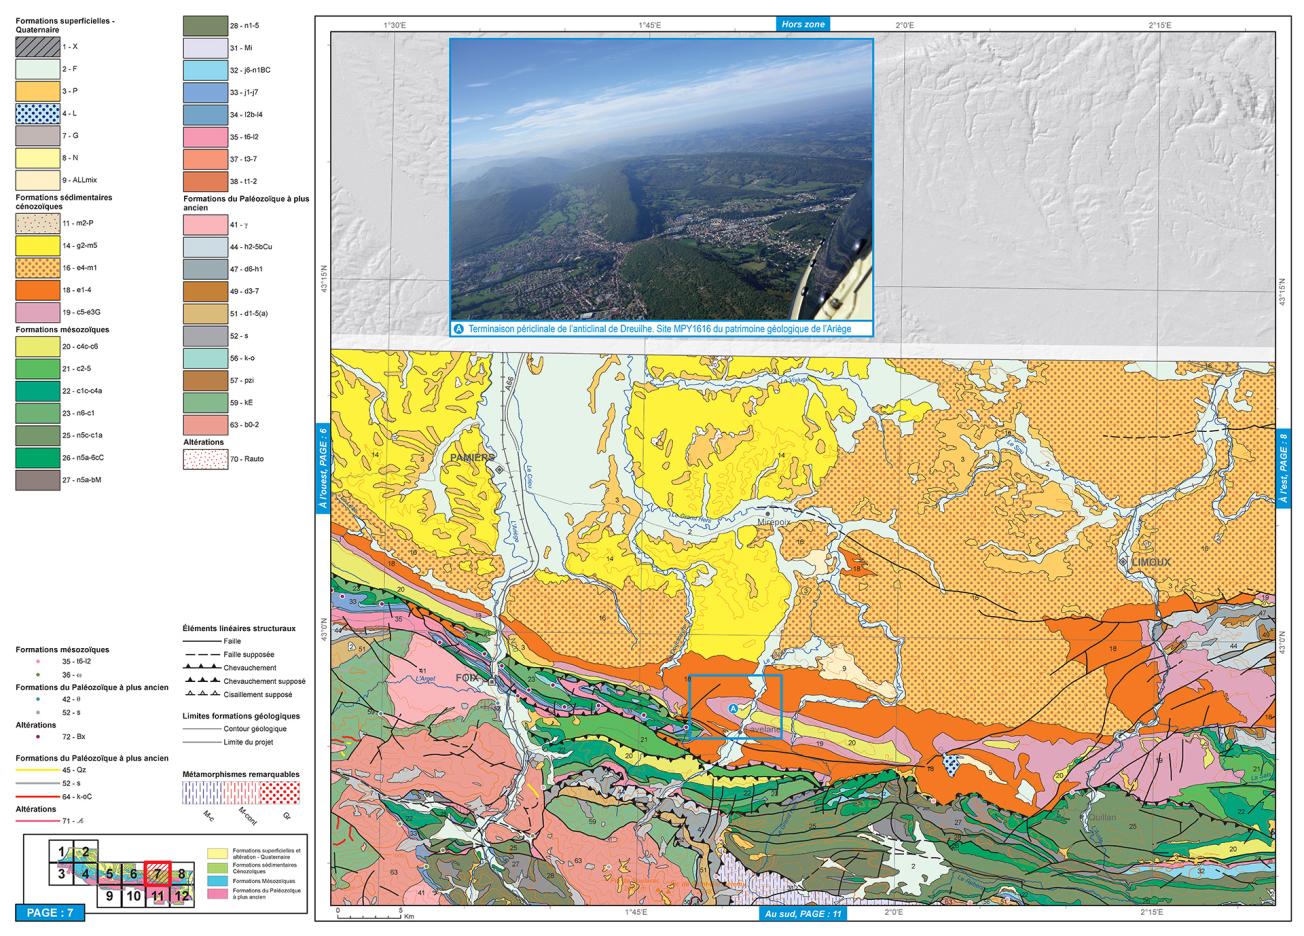 Extrait de la version Atlas de la carte du patrimoine géologique de l’Ariège